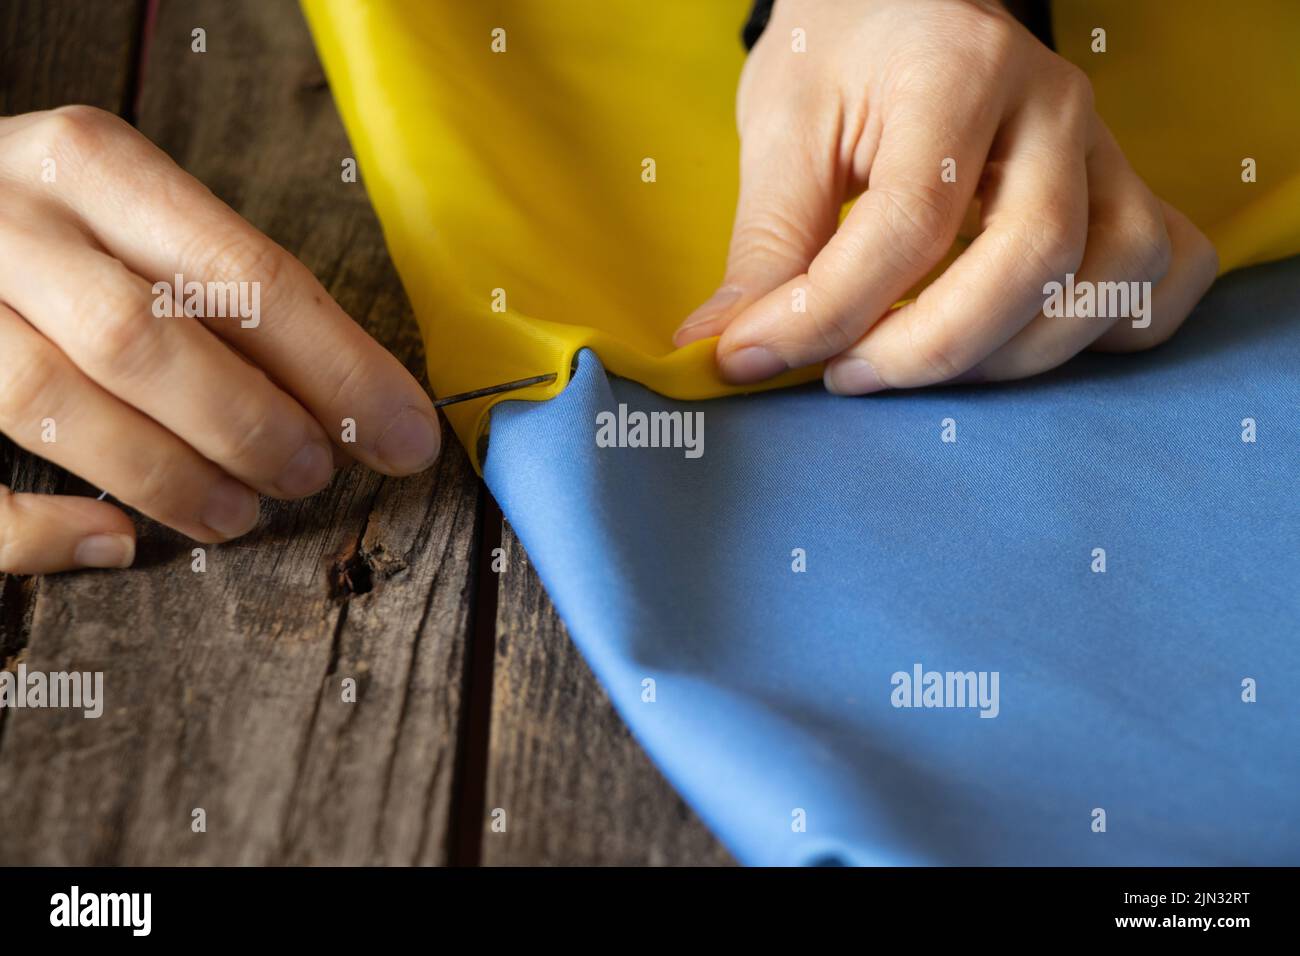 Frauenhände nähen die Nationalflagge der Ukraine gelb-blau am Tisch zu Hause in der Ukraine, Patriot, stoppen den Krieg in der Ukraine 2022 Stockfoto